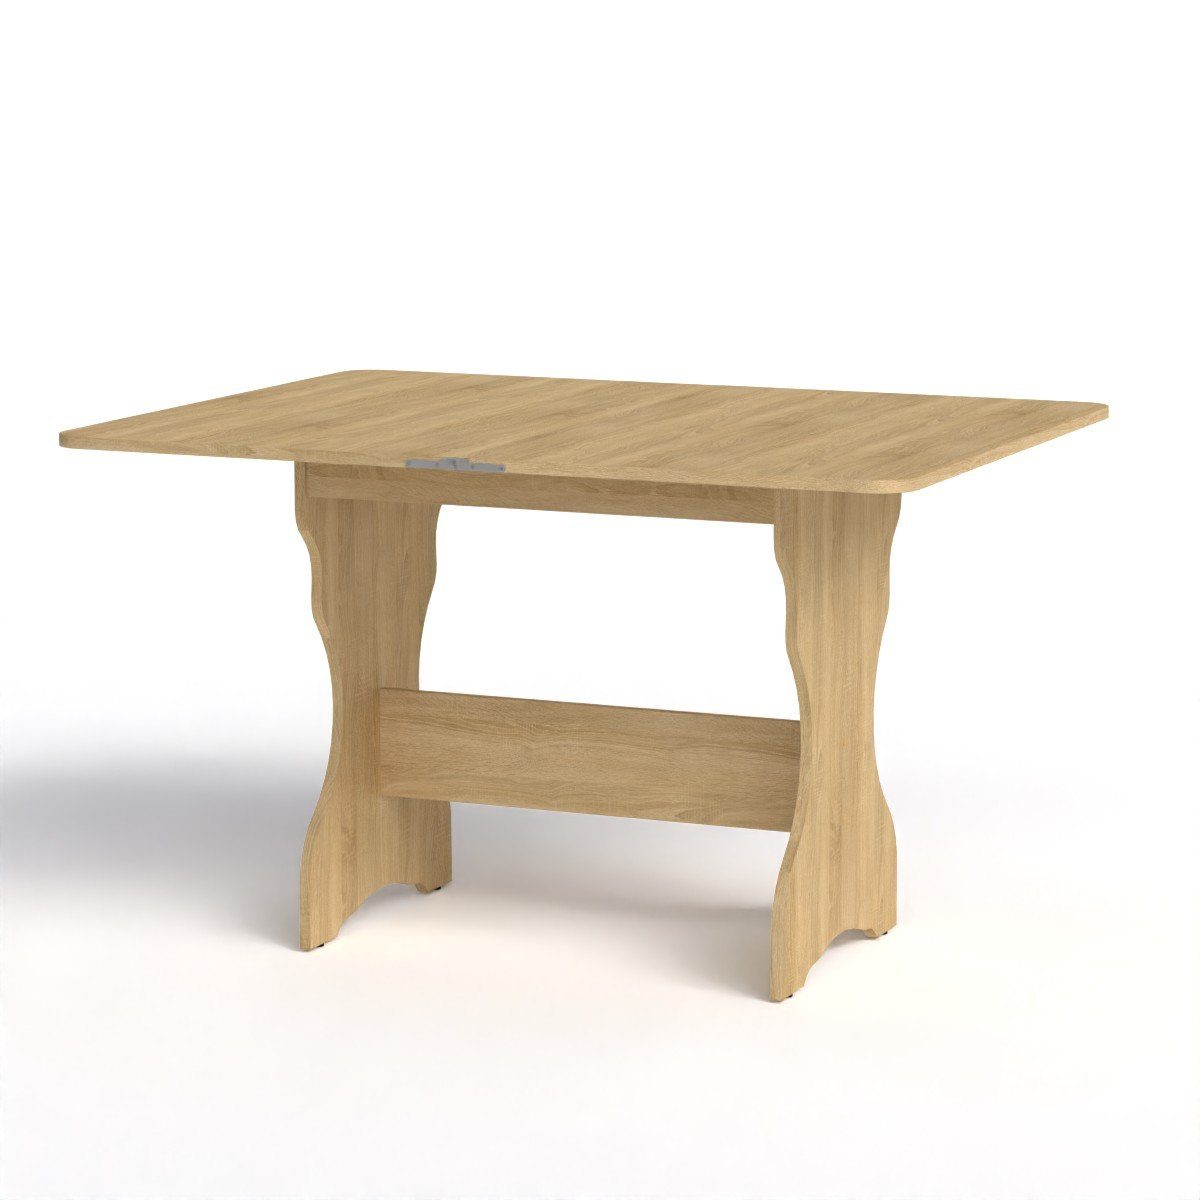 Rodnik Esstisch, ausklappbar platzsparend, drehbare Tischplatte mit abgerundeten Ecken sonoma Eiche